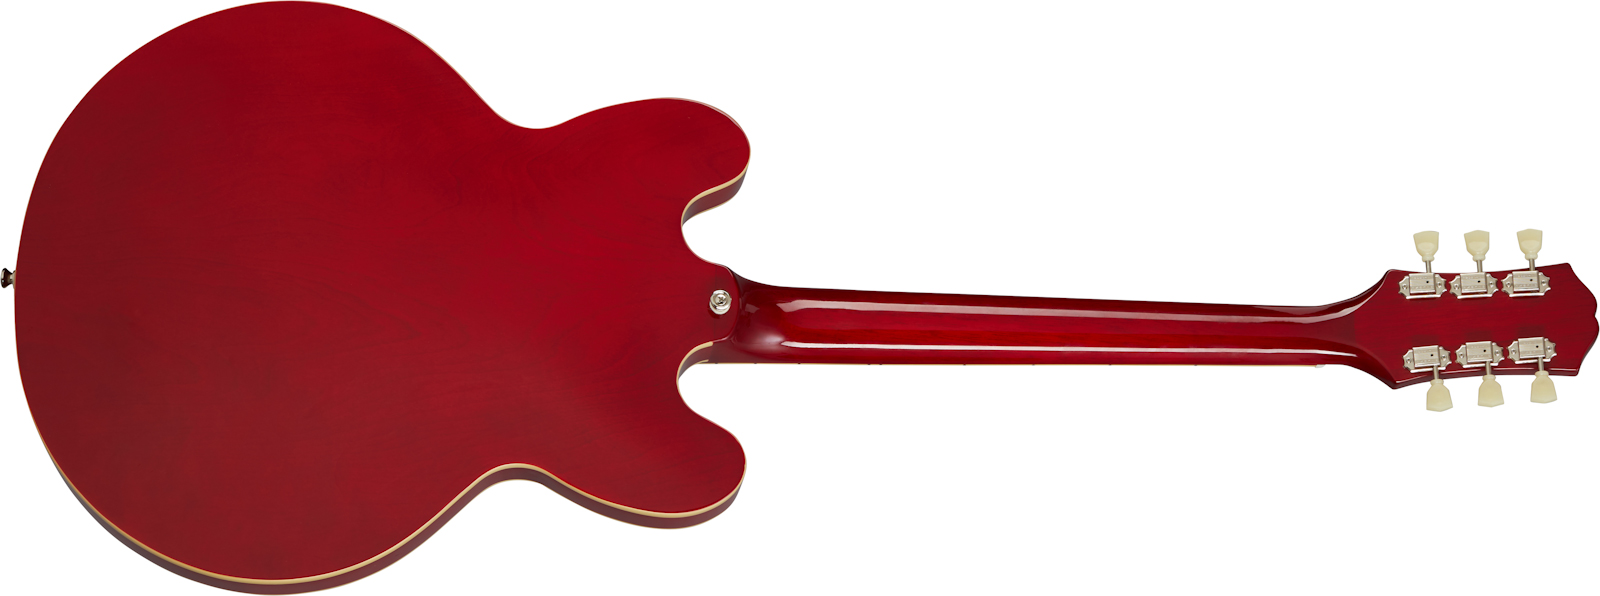 Epiphone Es-335 Lh Inspired By Gibson Original Gaucher 2h Ht Rw - Cherry - Guitarra electrica para zurdos - Variation 1